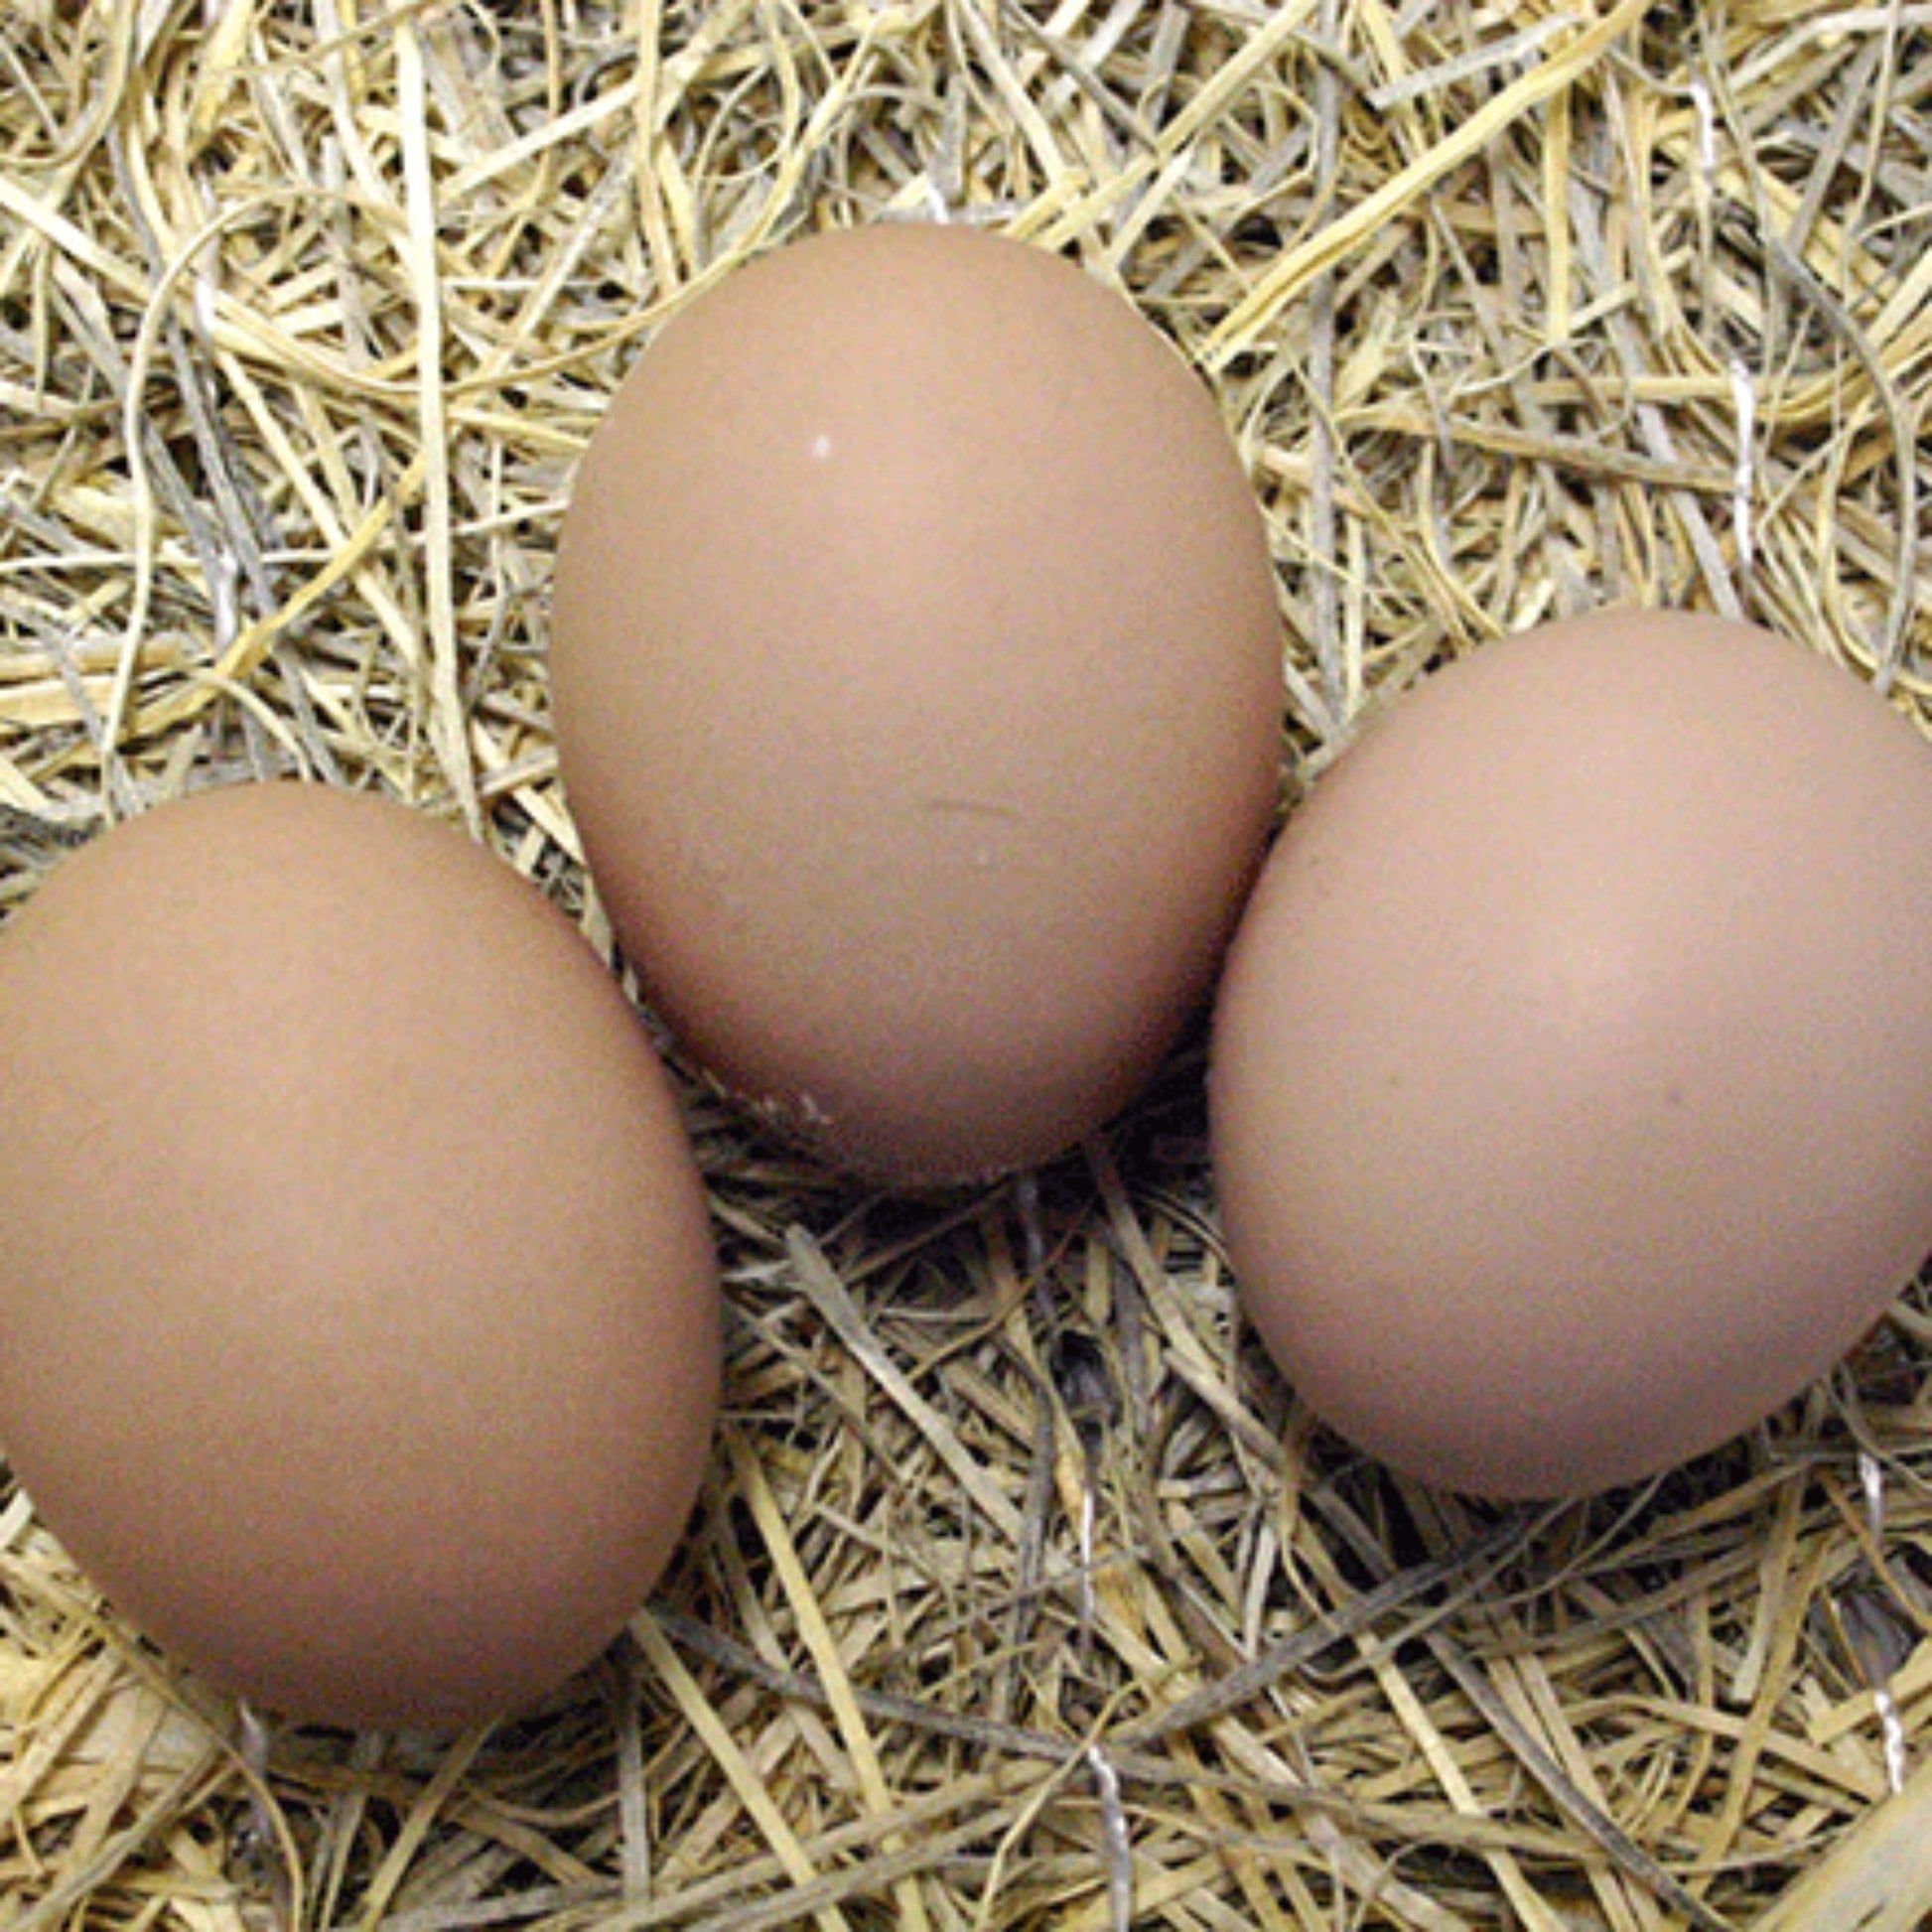 Cochin chicken eggs